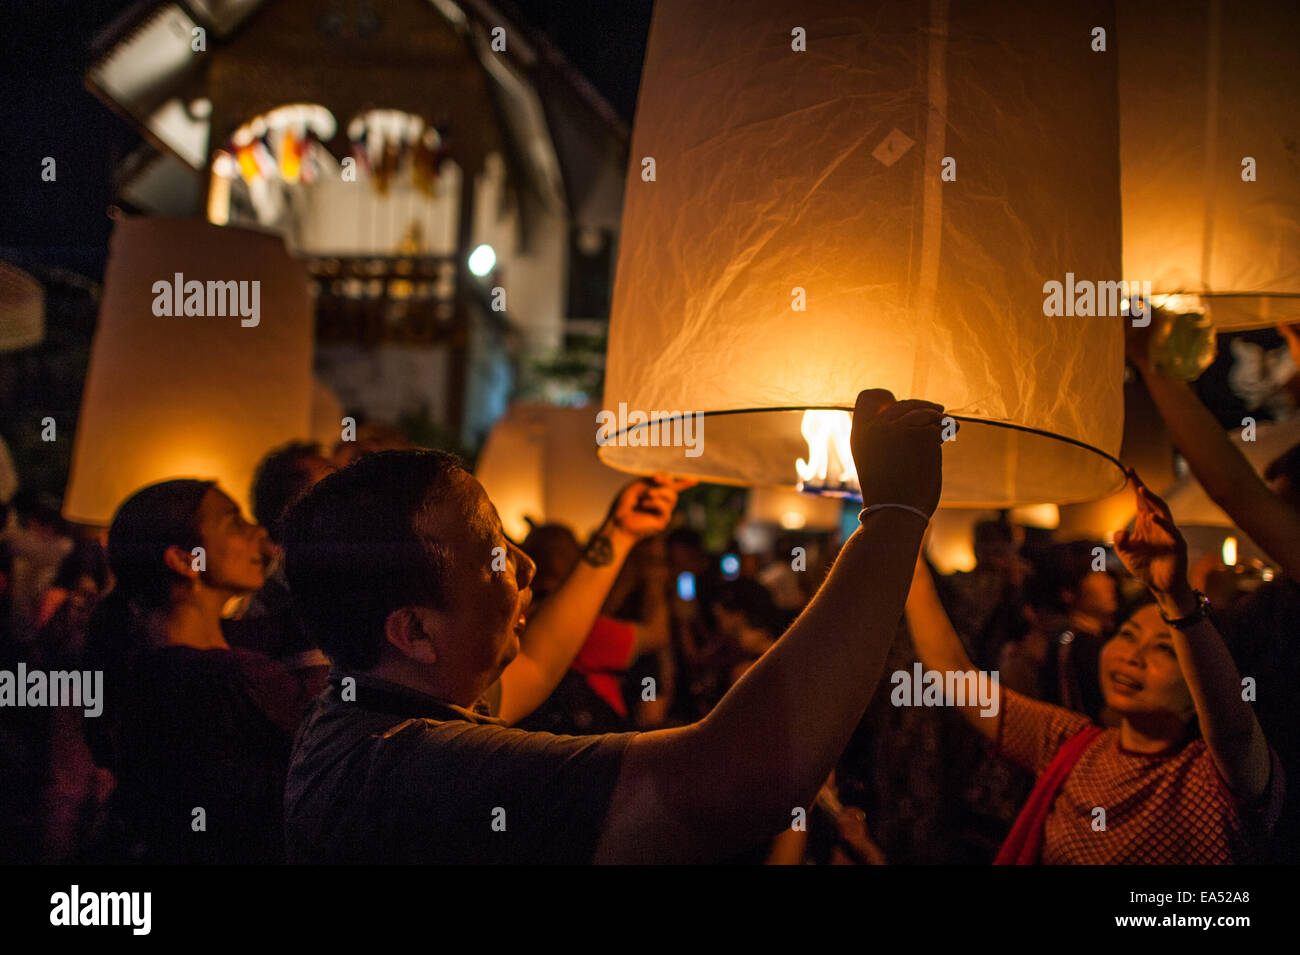 Loy Krathong festival de lumière - personnes lampions en papier de libération Banque D'Images